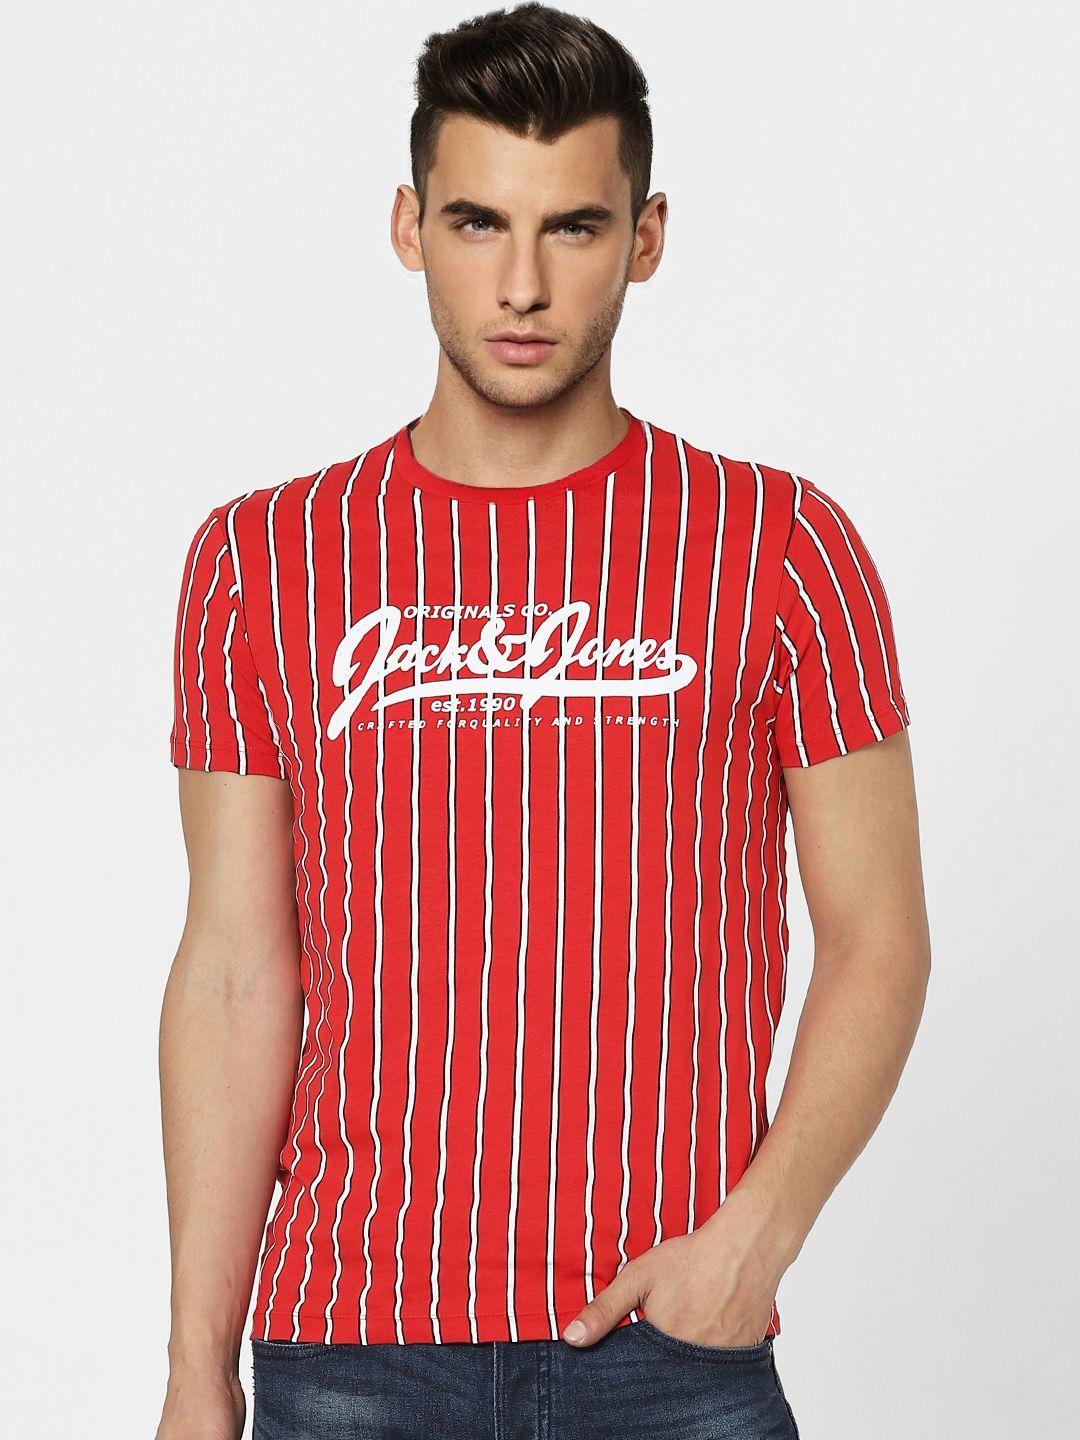 jack & jones men red & off white striped slim fit round neck t-shirt